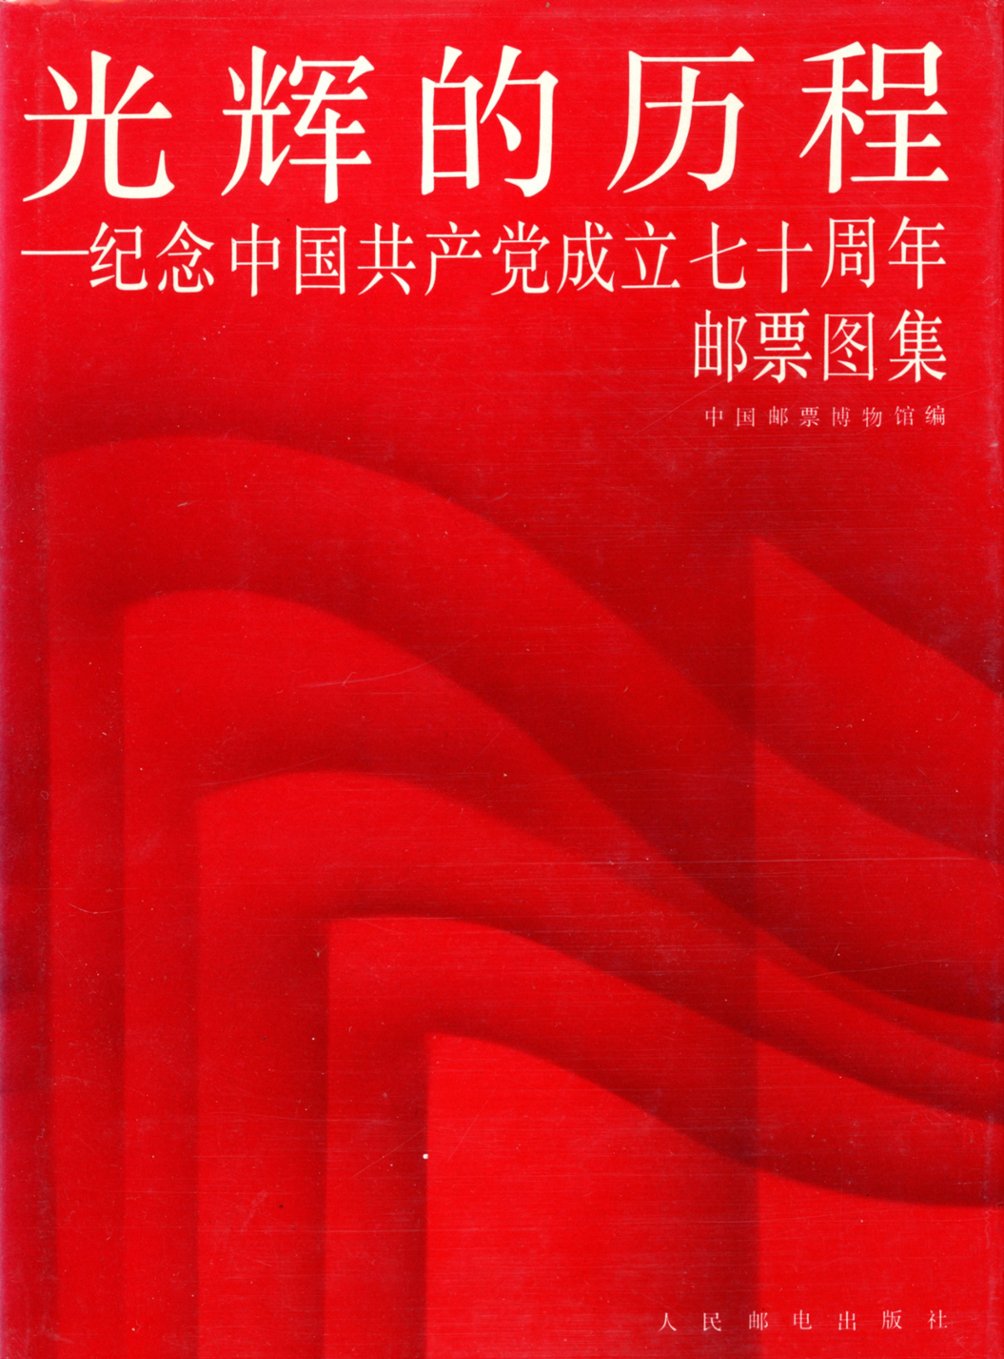 Guanghui de Licheng - Jinian Zhongguo Gongchandang Chengli Chishi Zhounian (he Glorious Struggle - Commemorating the 70th Anniversary of the Founding of the Chinese Communist Party), 1991, in Chinese, as new (2 lb) (2 images)